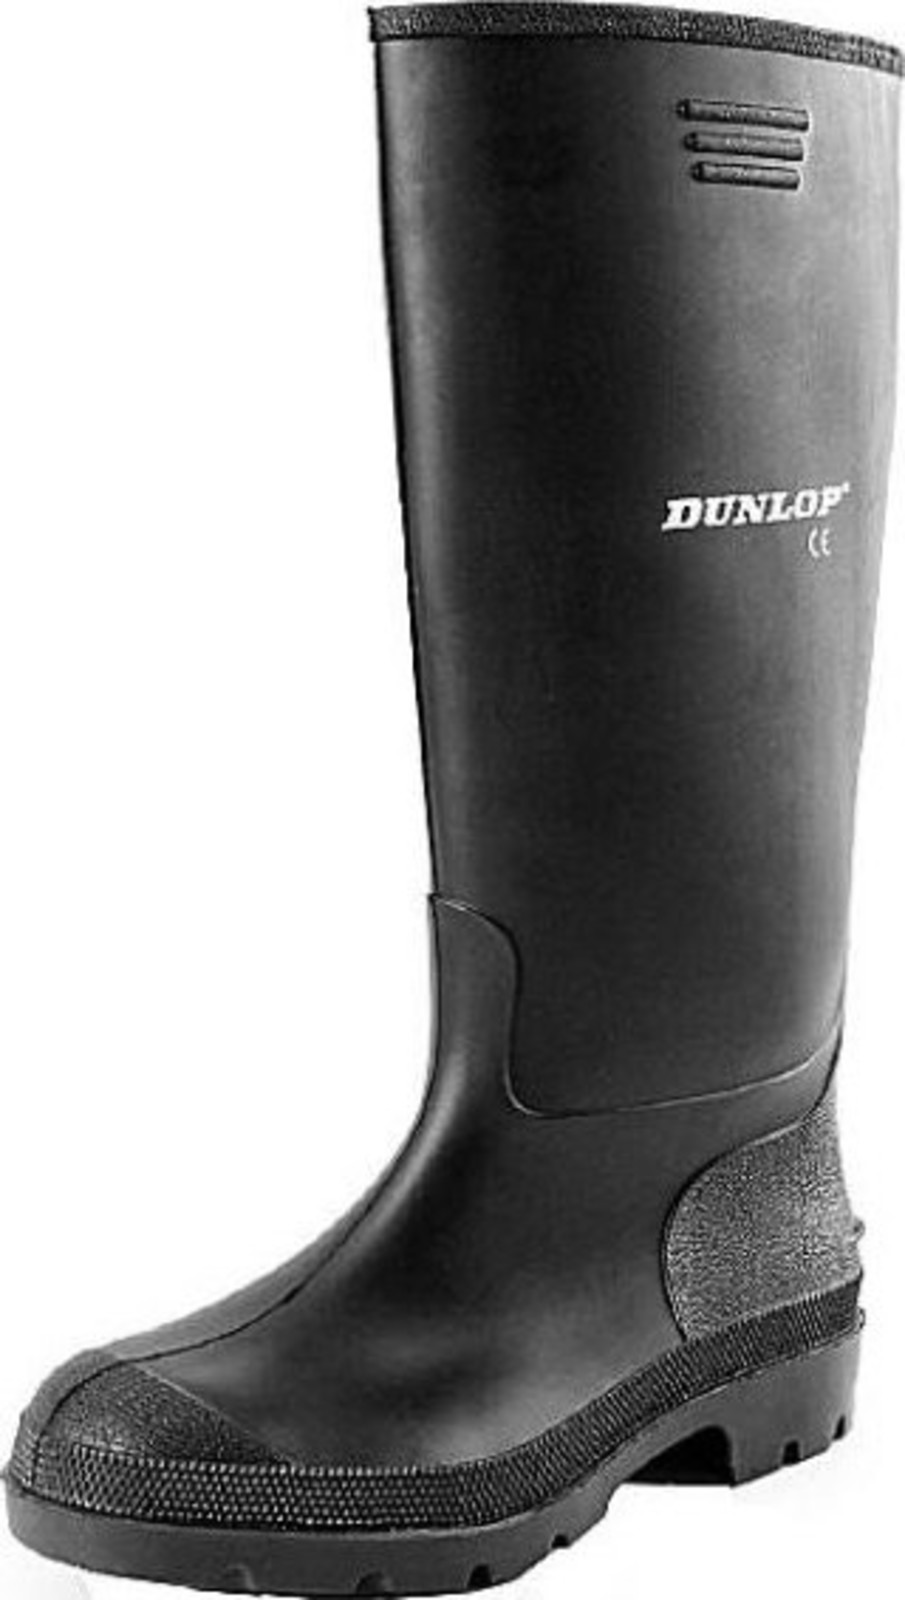 Gumáky Dunlop Preismeister PVC - veľkosť: 41, farba: čierna